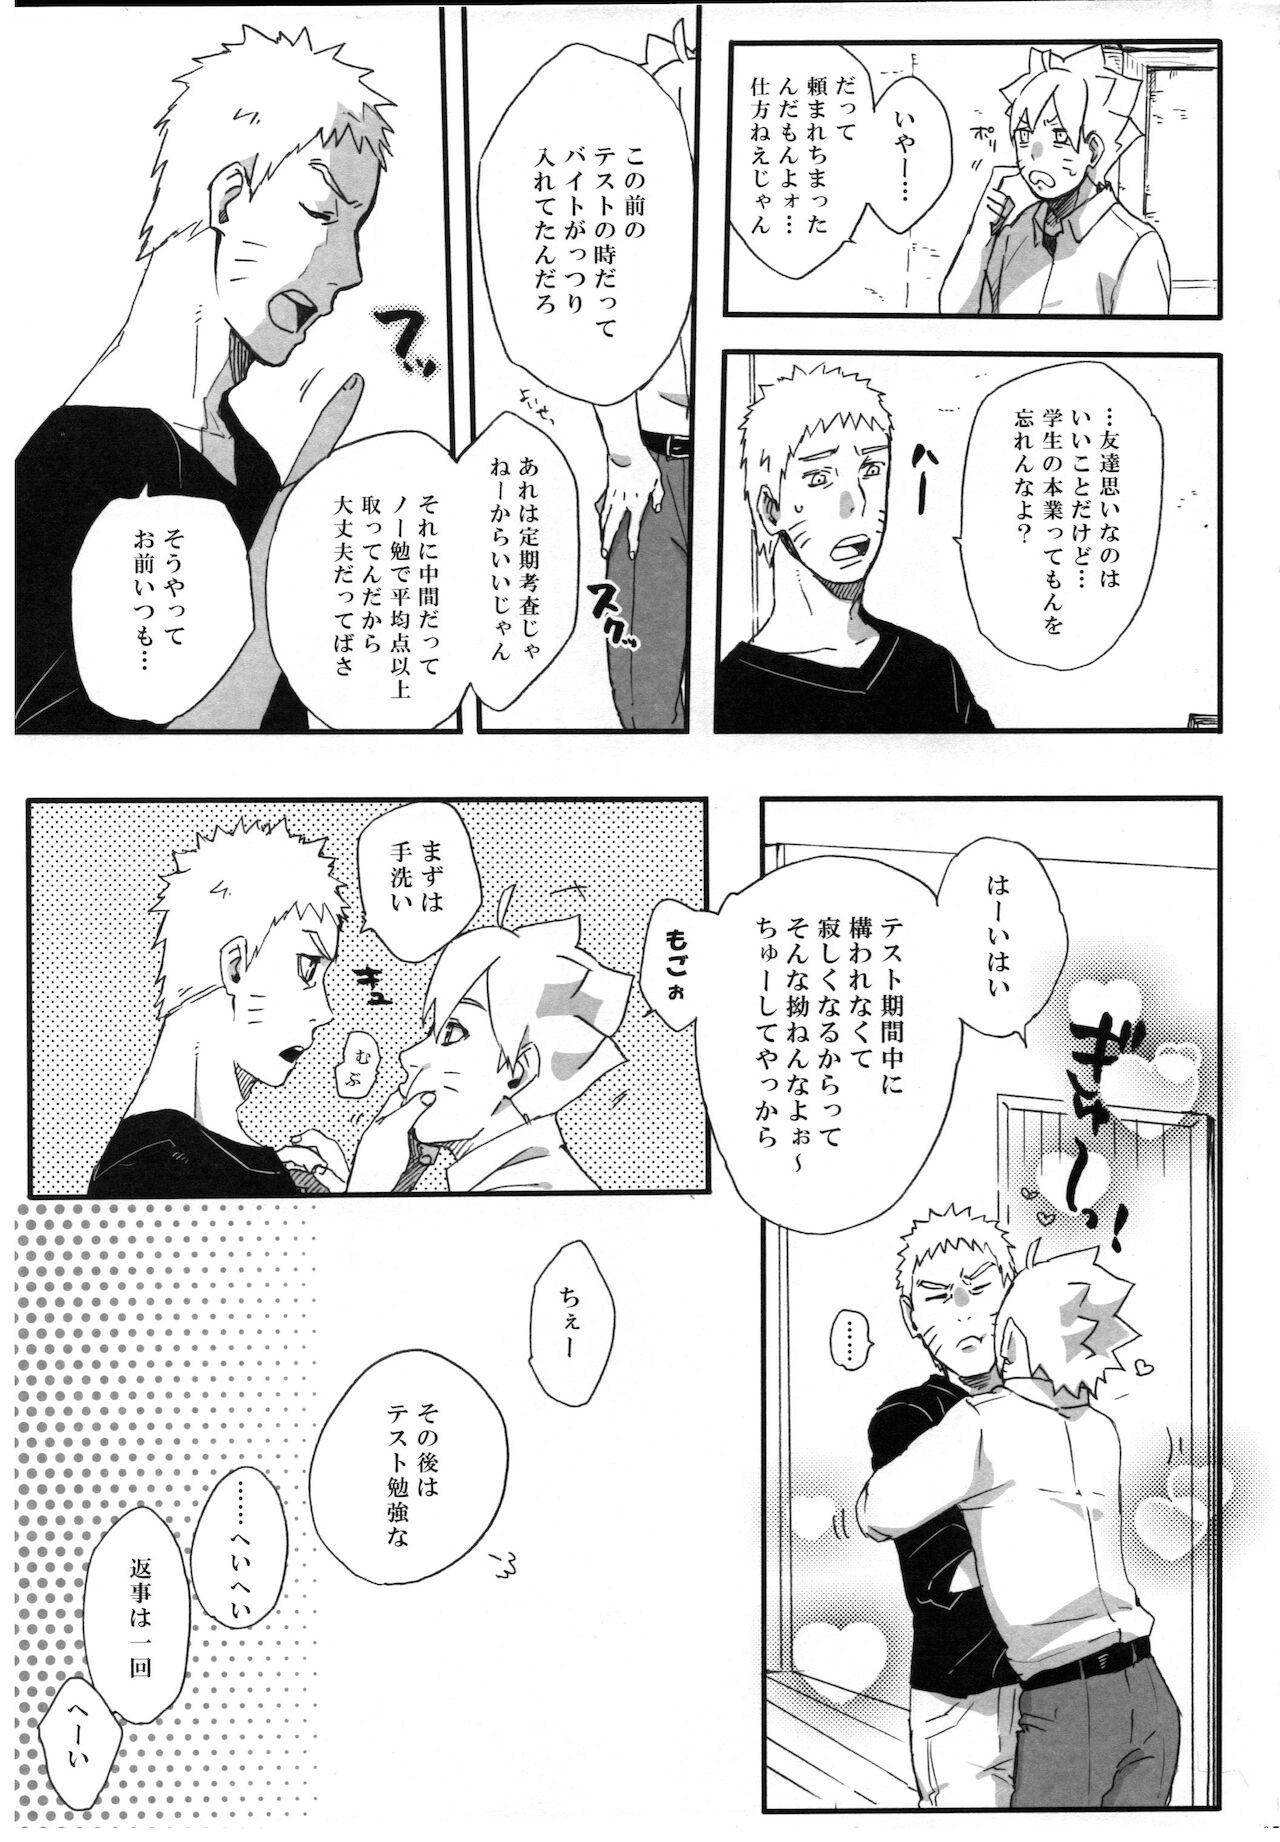 Gaydudes Getsuyou wa itsumo chikoku sunzen - Naruto Squirters - Page 4